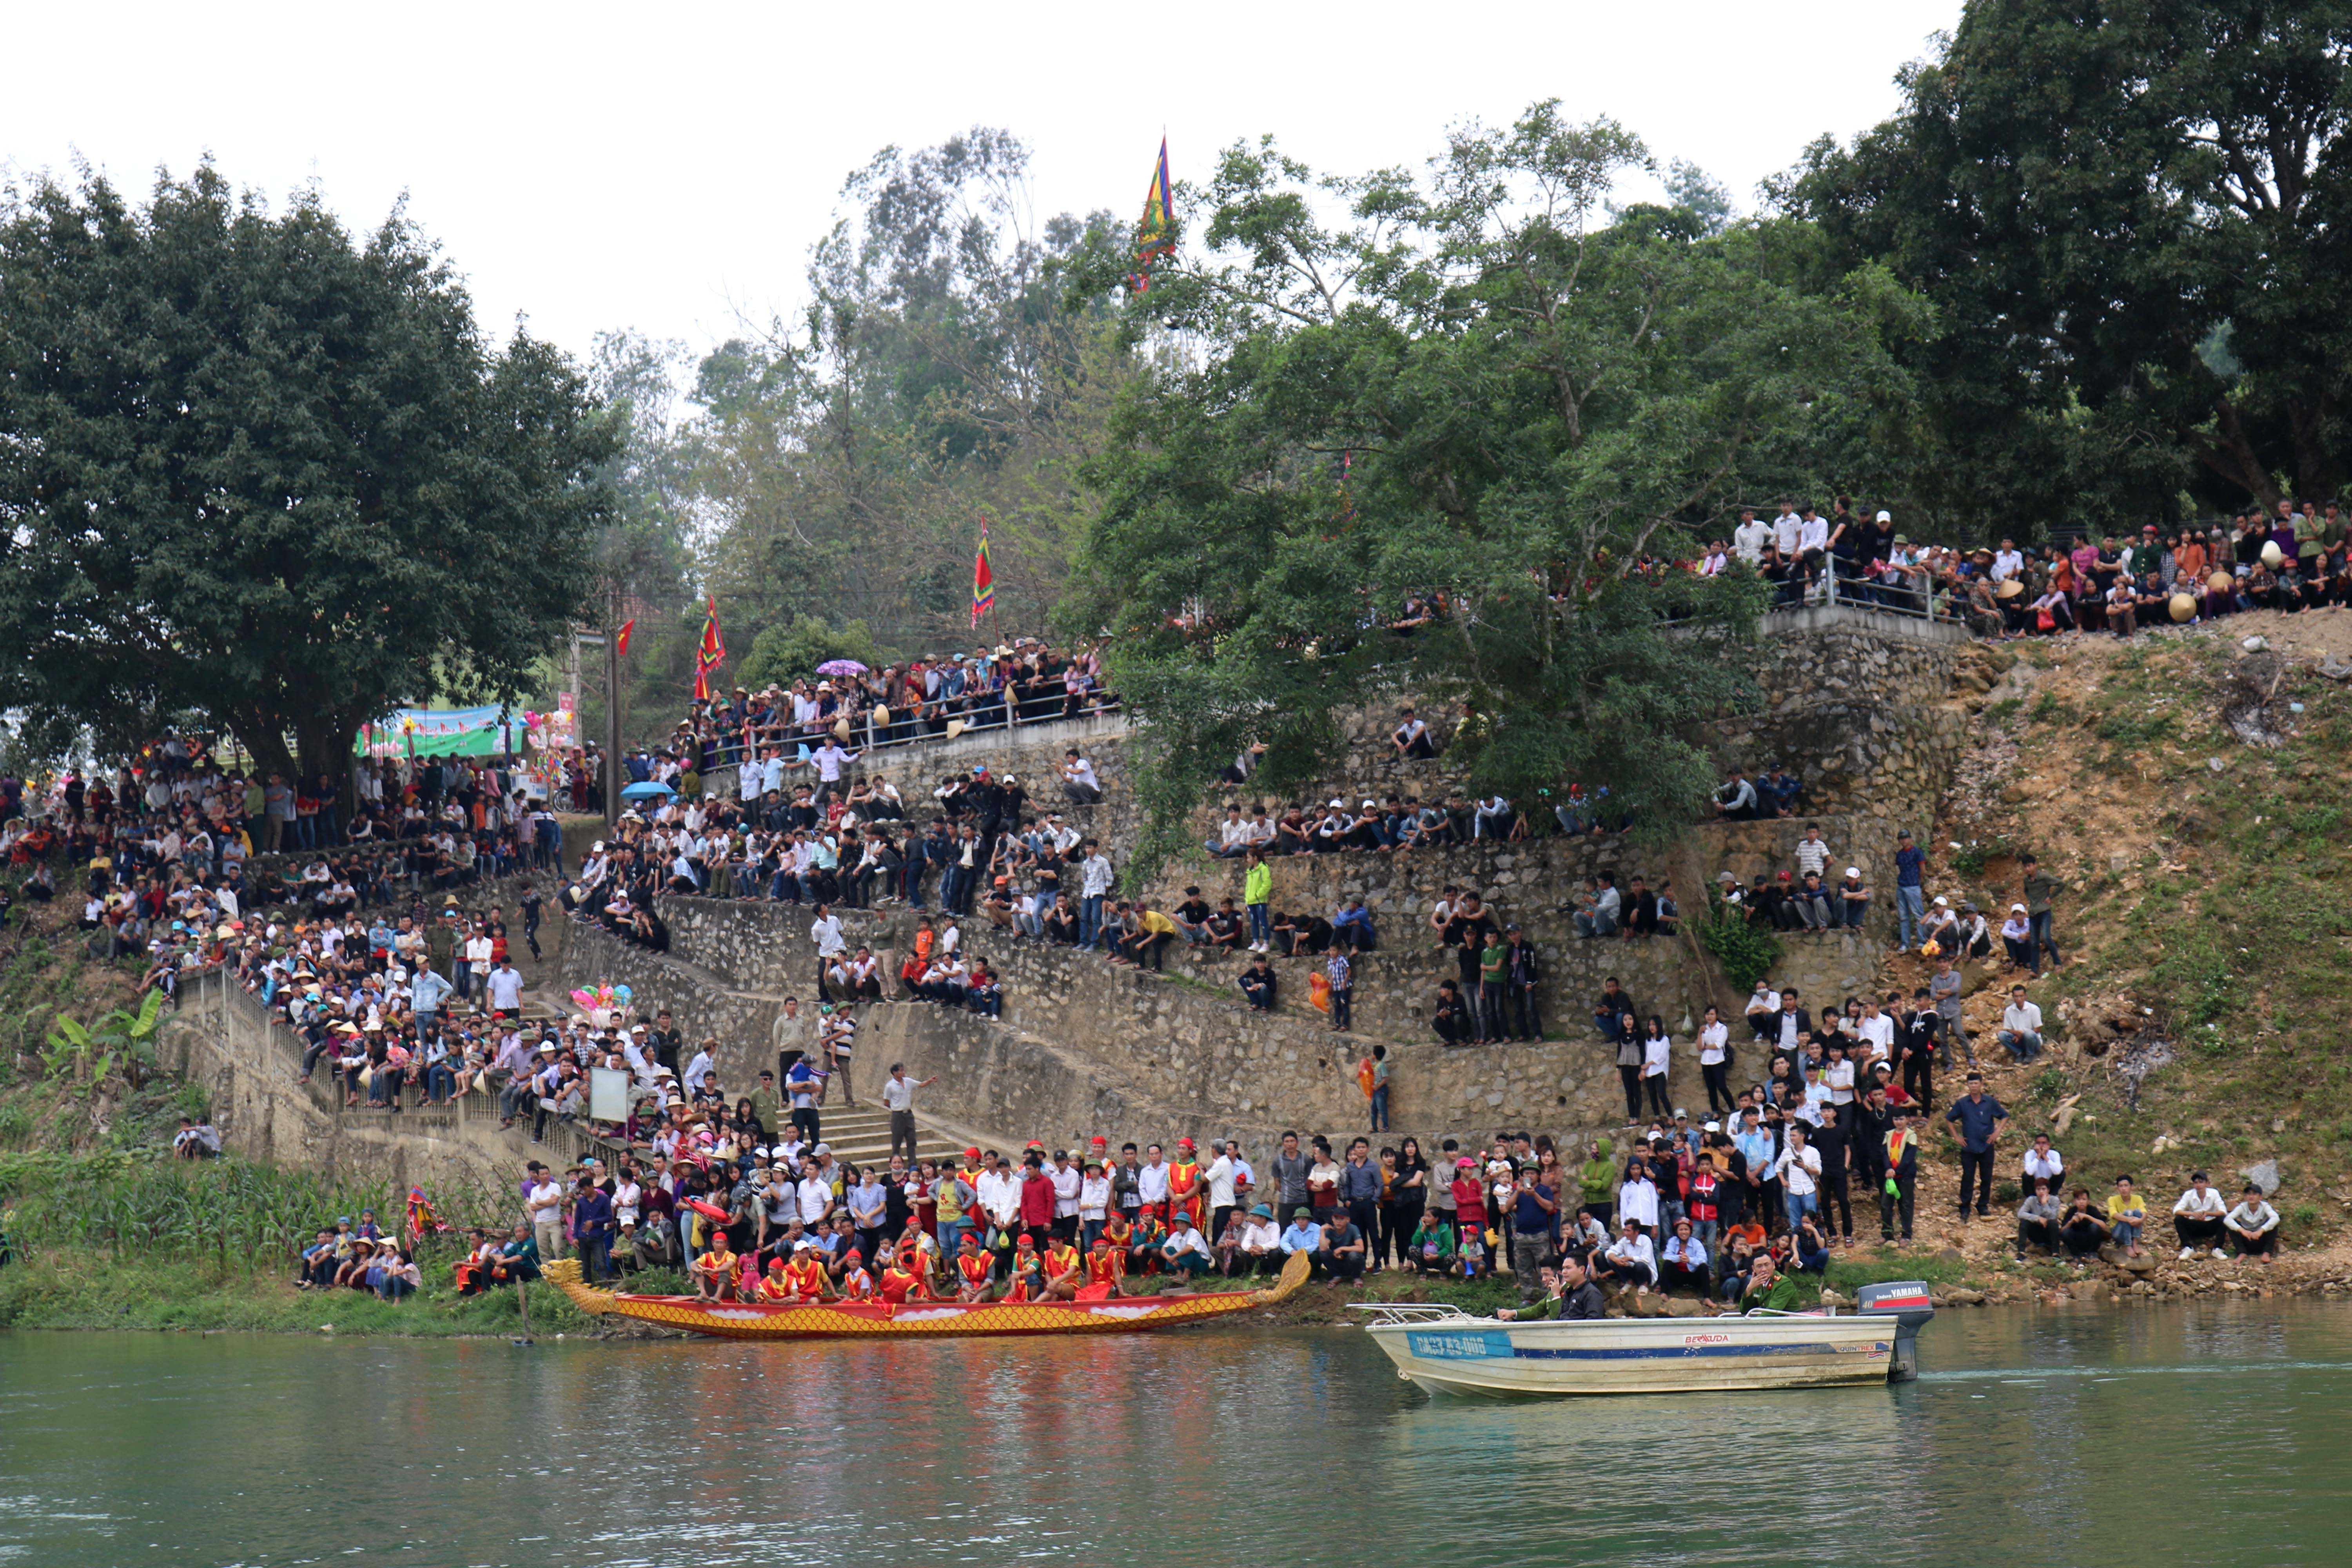  Từ đầu chiều, rất đông người dân đã có mặt trên bến sông Lam để xem hội chèo bơi. Ảnh: Huy Thư